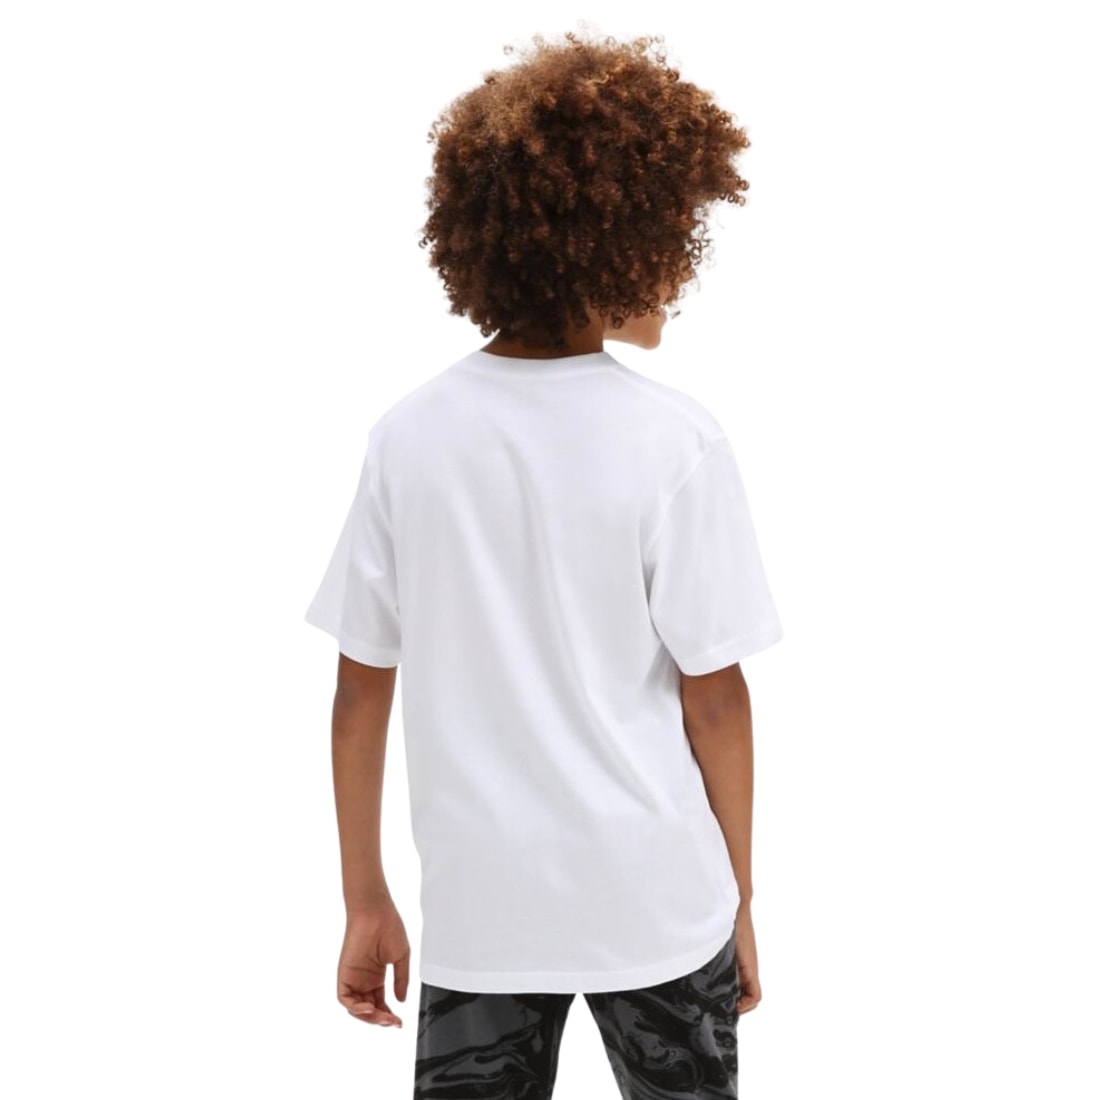 Vans Kids Dino Sk8 Boys T-Shirt - White - Boys Skate Brand T-Shirt by Vans